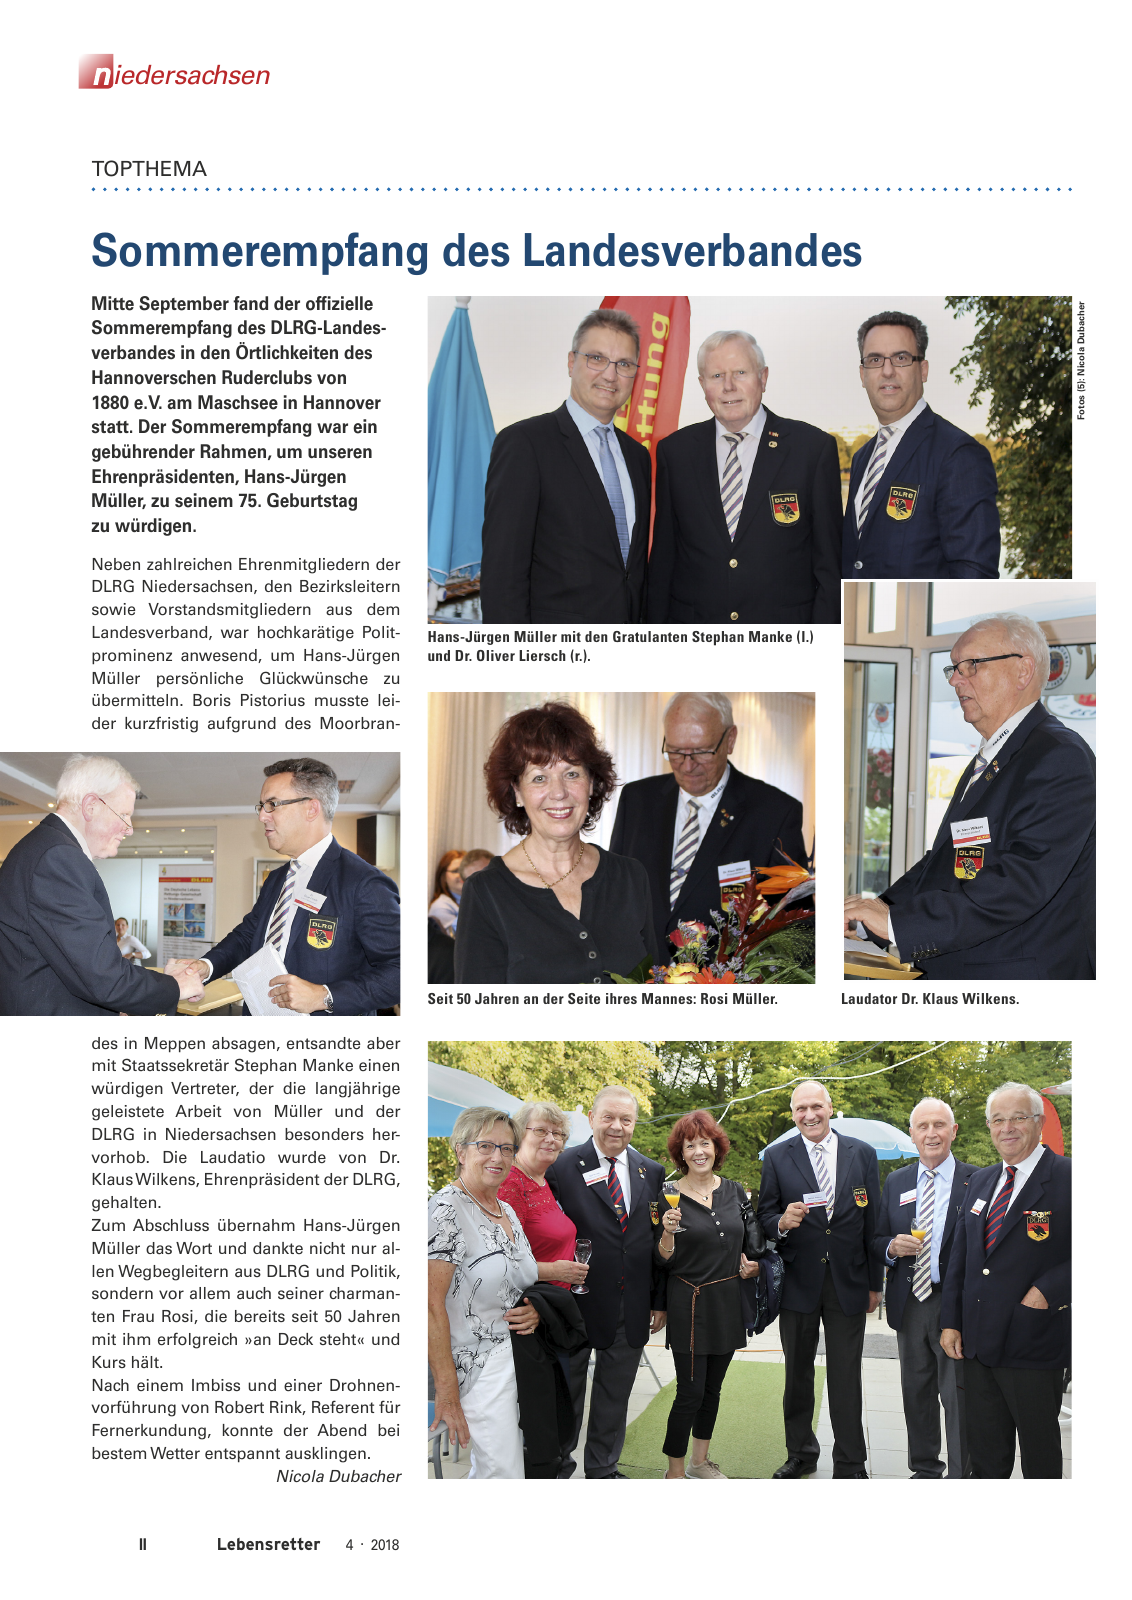 Vorschau Lebensretter 4/2018 - Regionalausgabe Niedersachsen Seite 4